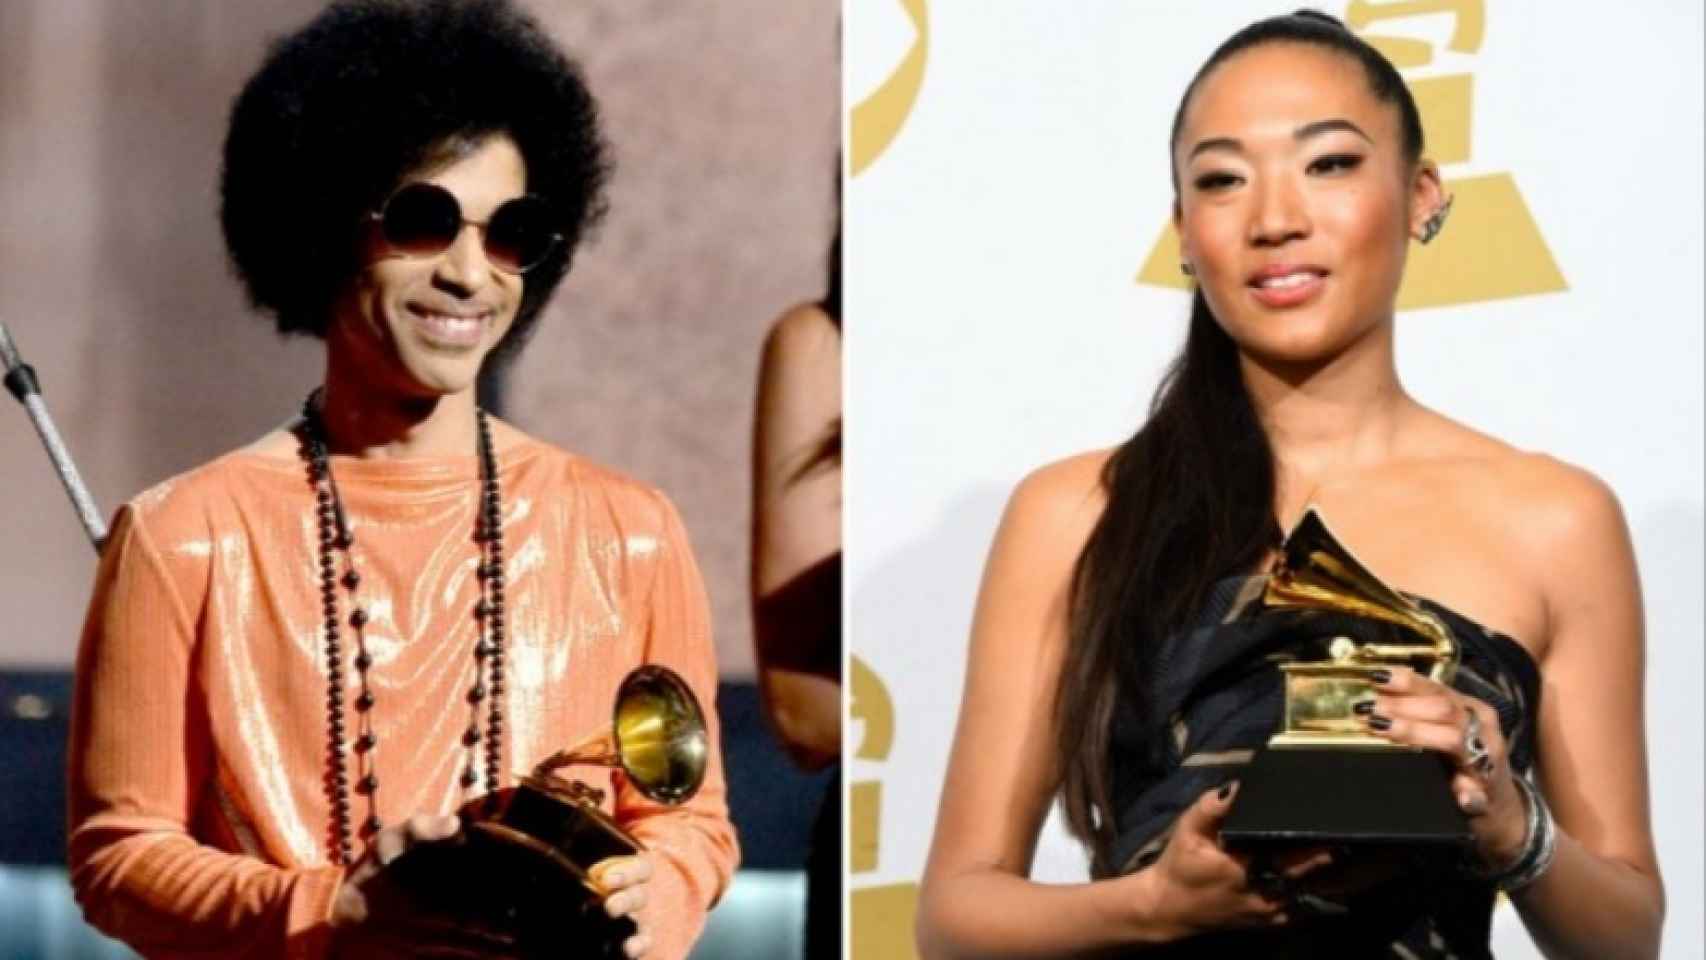 Prince y Judith Hill, ambos con sus respectivos Grammy